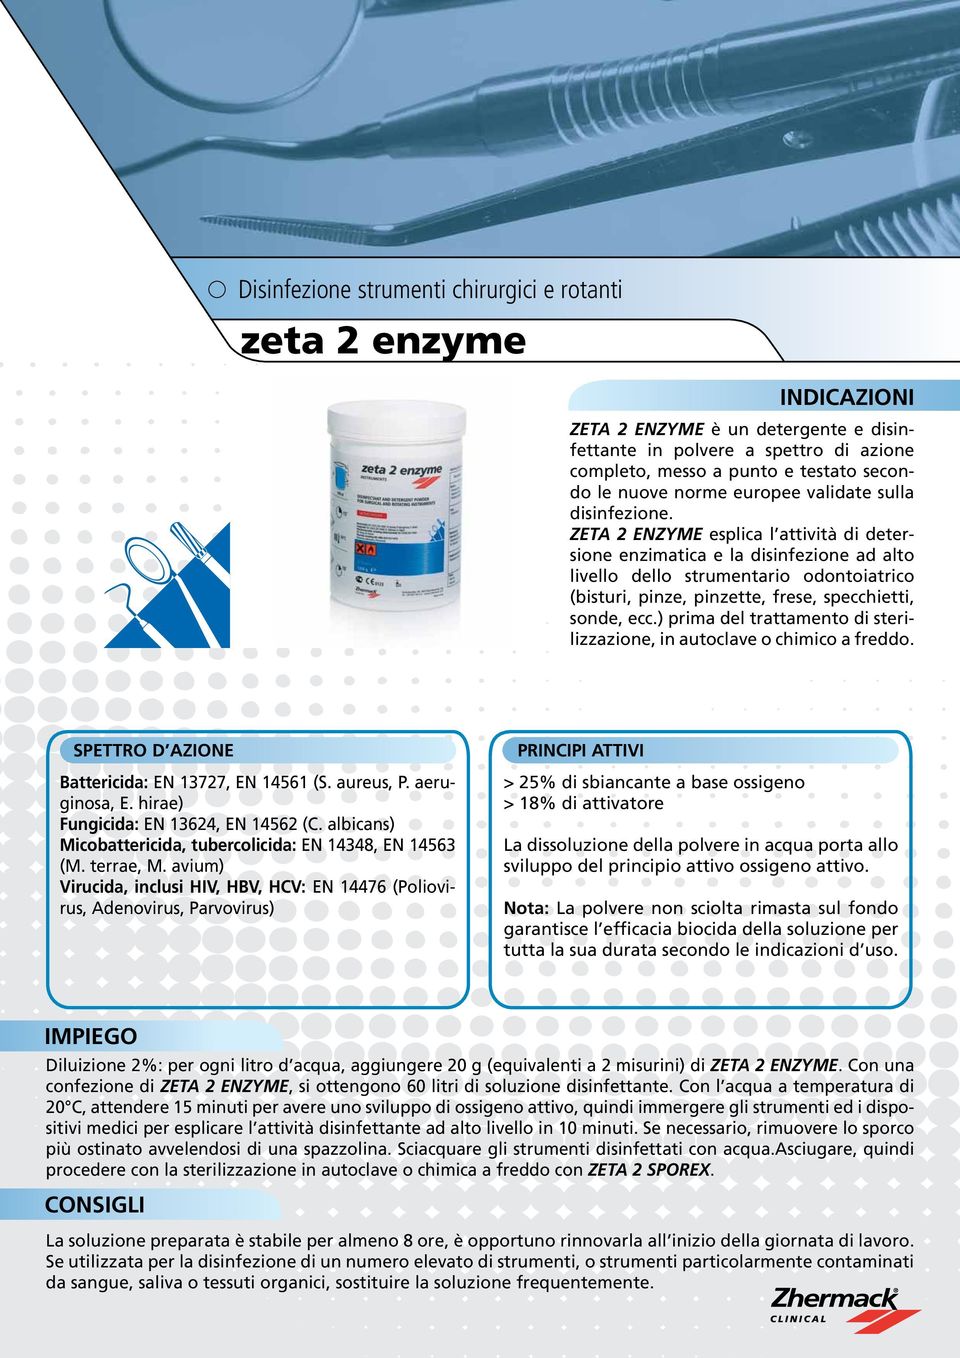 ZETA 2 ENZYME esplica l attività di detersione enzimatica e la disinfezione ad alto livello dello strumentario odontoiatrico (bisturi, pinze, pinzette, frese, specchietti, sonde, ecc.